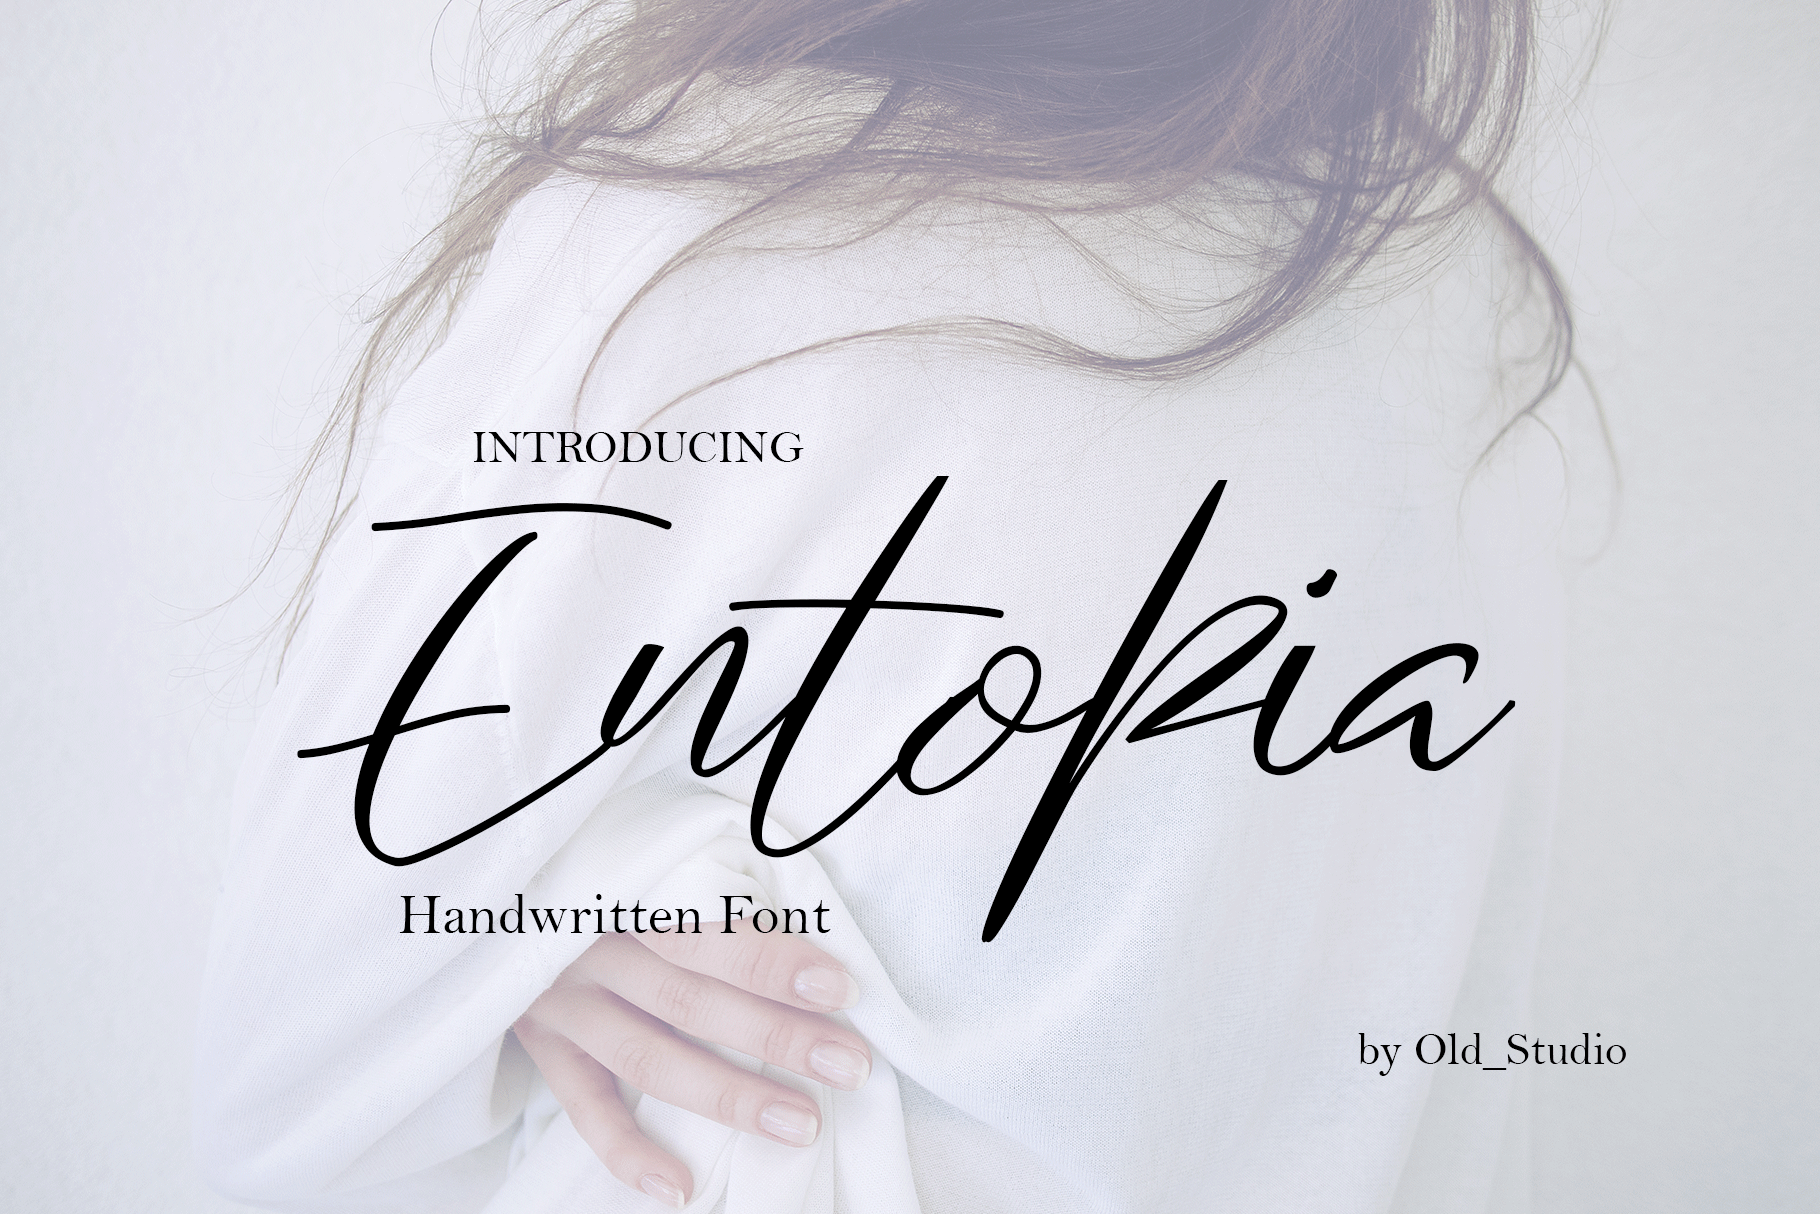 Entopia Font